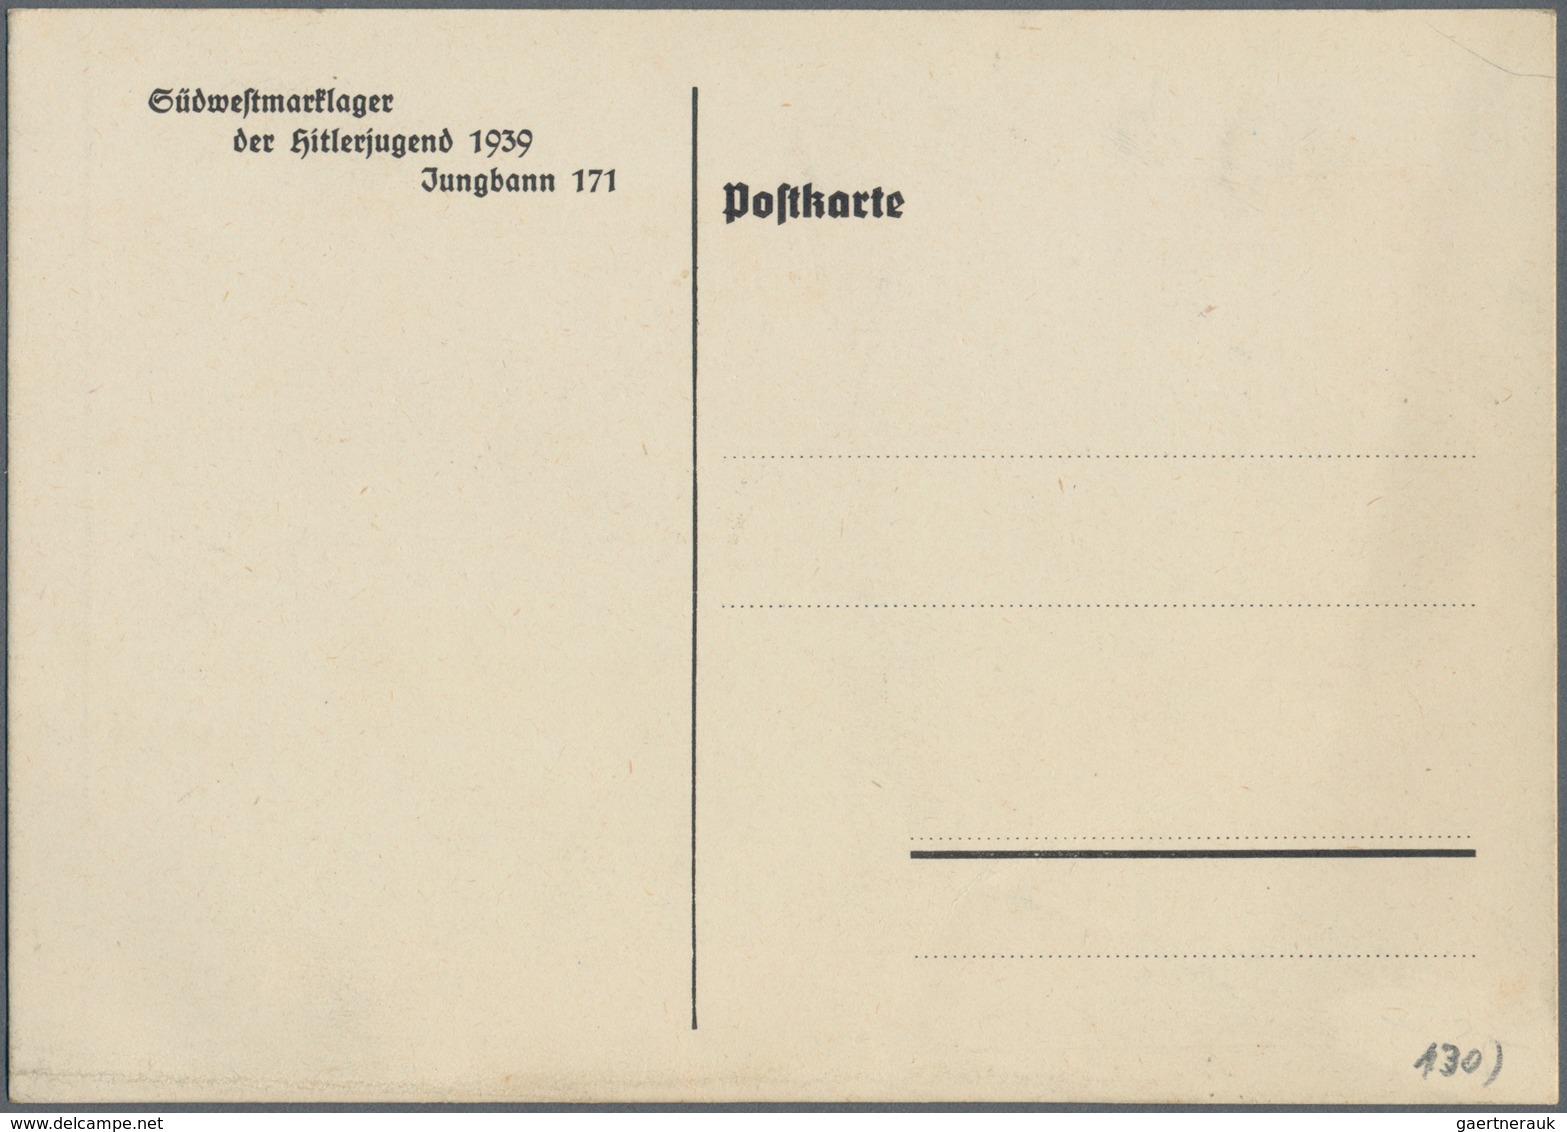 Ansichtskarten: Propaganda: 1939, "Jungbannlager 1939 Jungbann 171 Mannheim", Großformatige Propagan - Political Parties & Elections